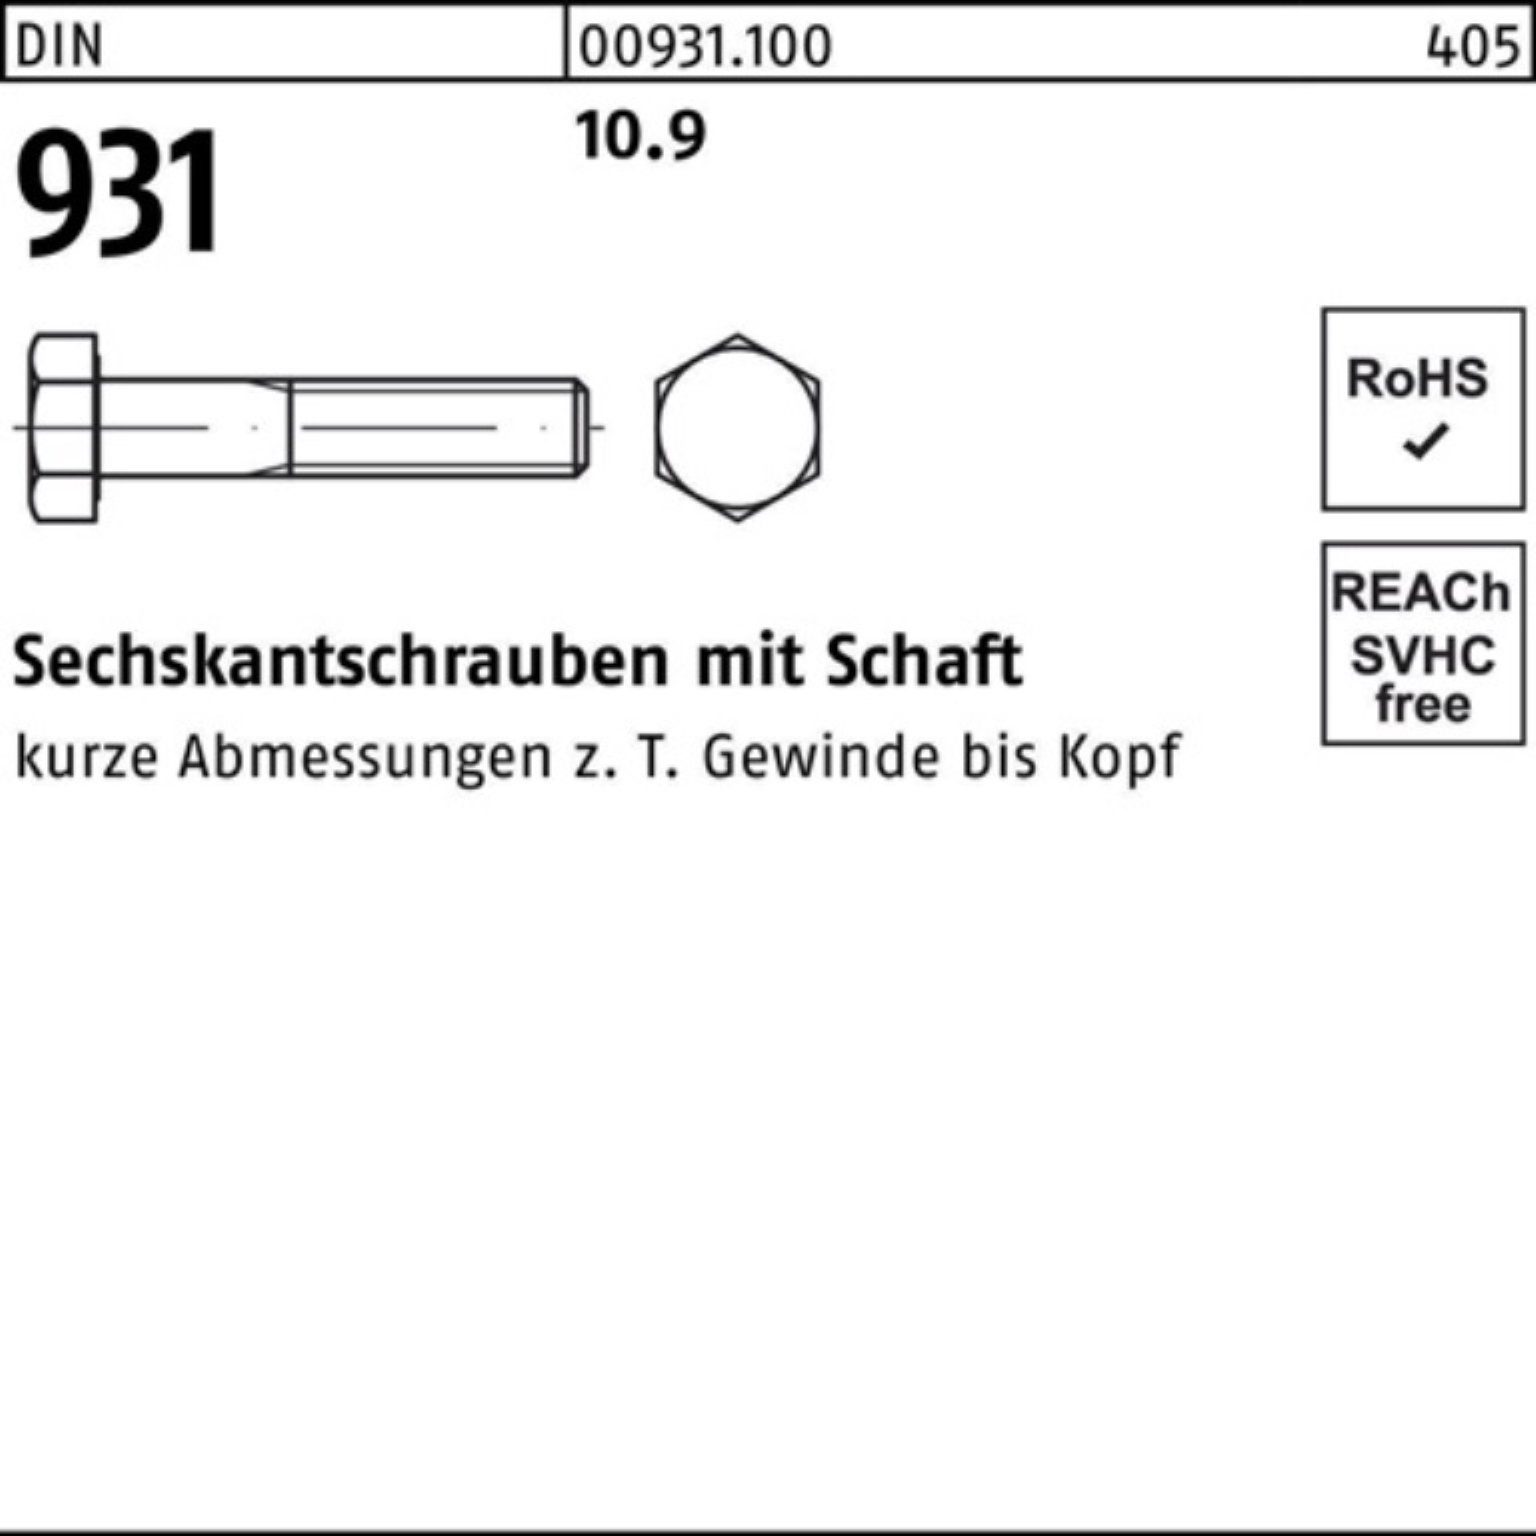 Reyher Sechskantschraube 100er M16x 25 931 DIN Stück DI Pack Schaft 130 Sechskantschraube 10.9